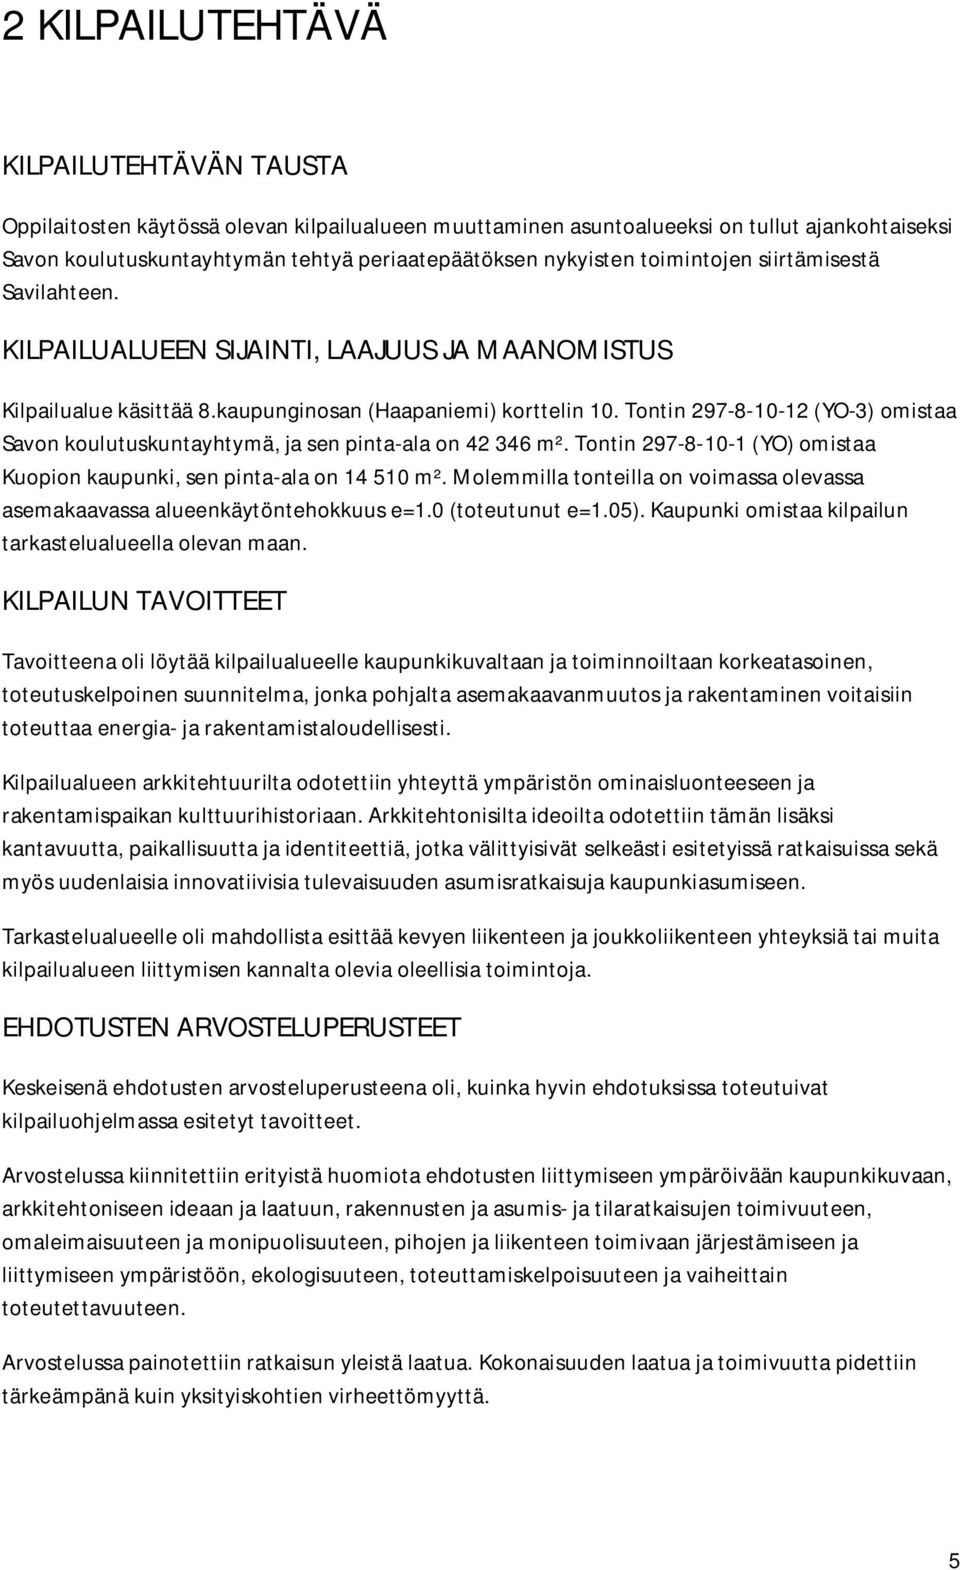 Tontin 297-8-10-12 (YO-3) omistaa Savon koulutuskuntayhtymä, ja sen pinta-ala on 42 346 m². Tontin 297-8-10-1 (YO) omistaa Kuopion kaupunki, sen pinta-ala on 14 510 m².